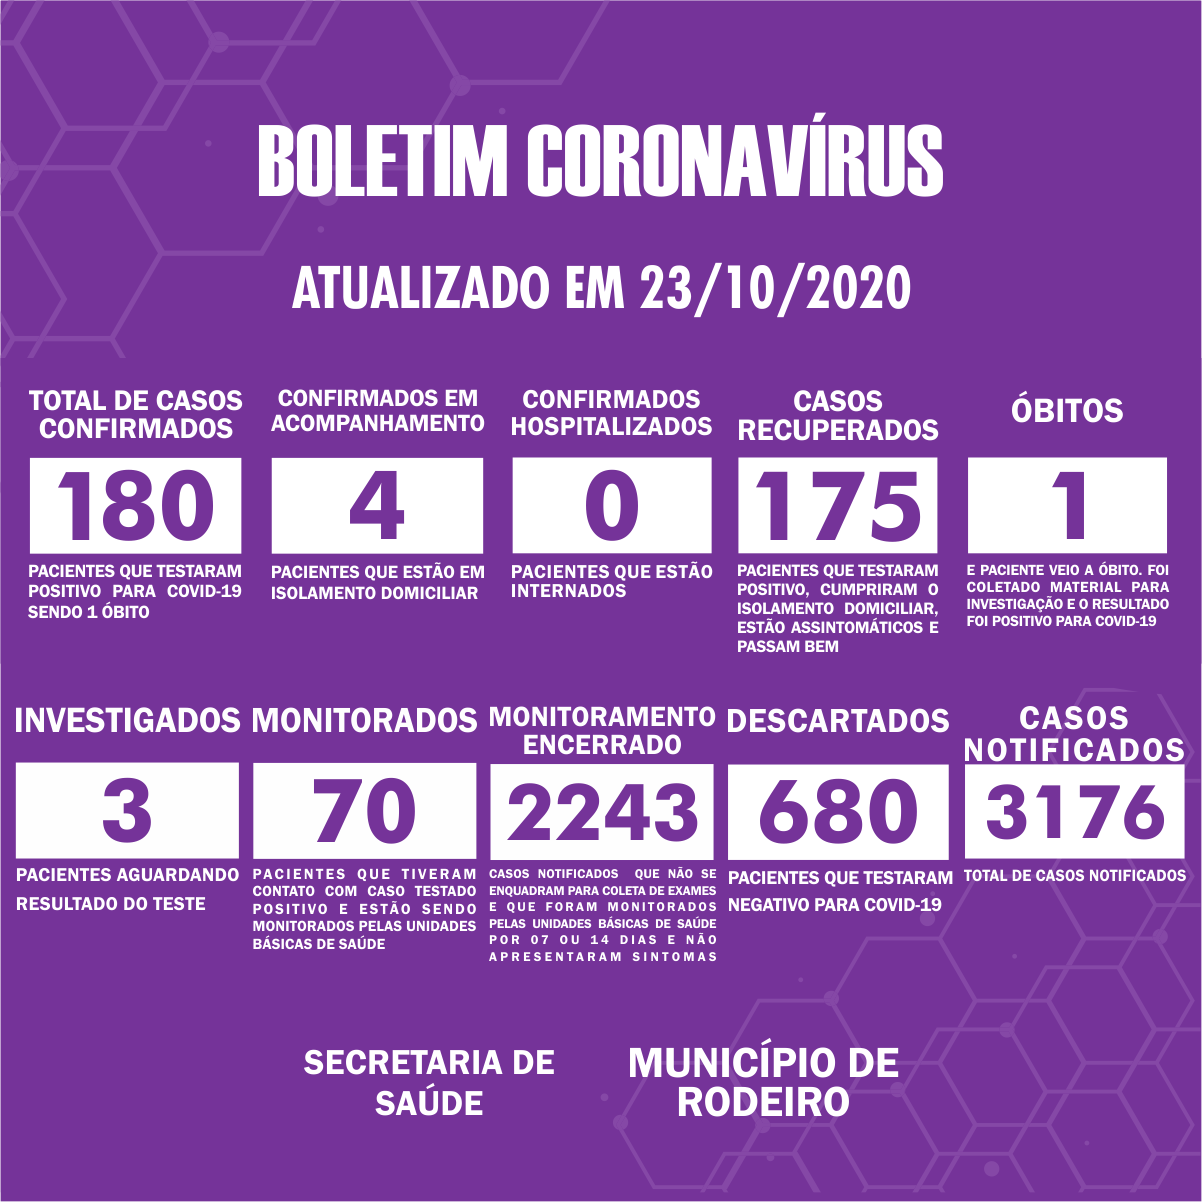 Boletim Epidemiológico do Município de Rodeiro sobre coronavírus, atualizado em 23/10/2020